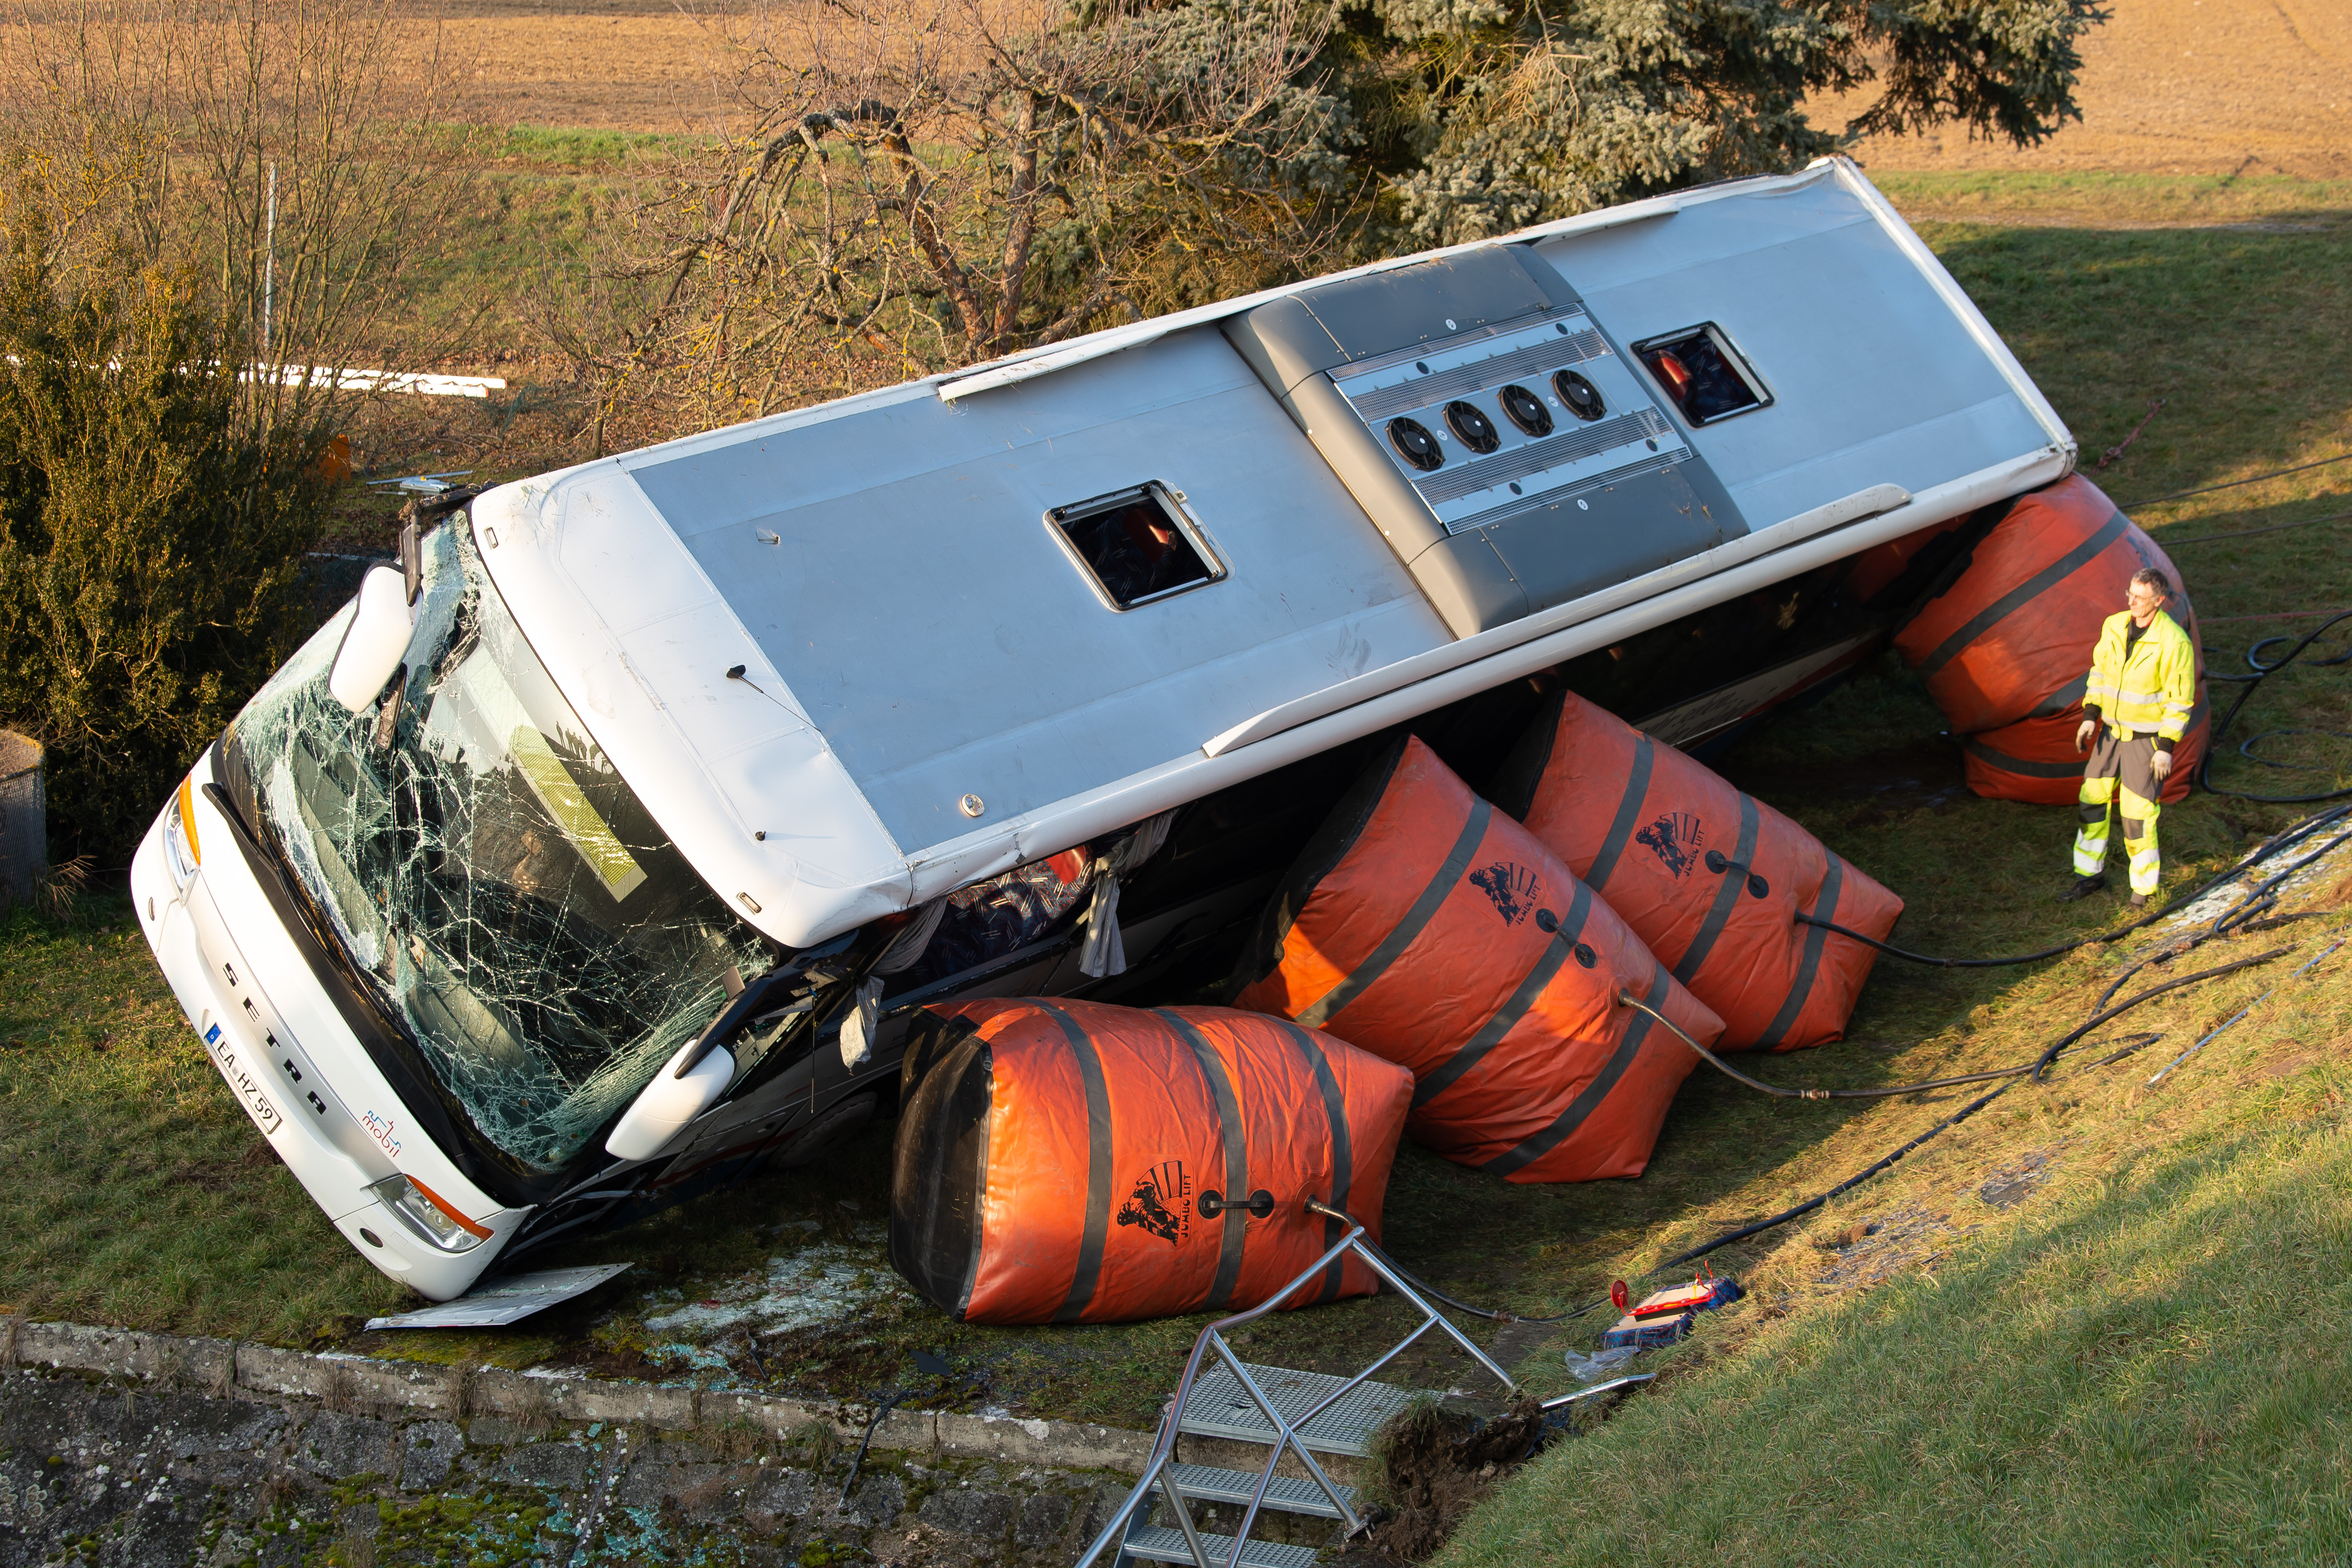 Egy nap alatt két iskolabusz-baleset történt Németországban